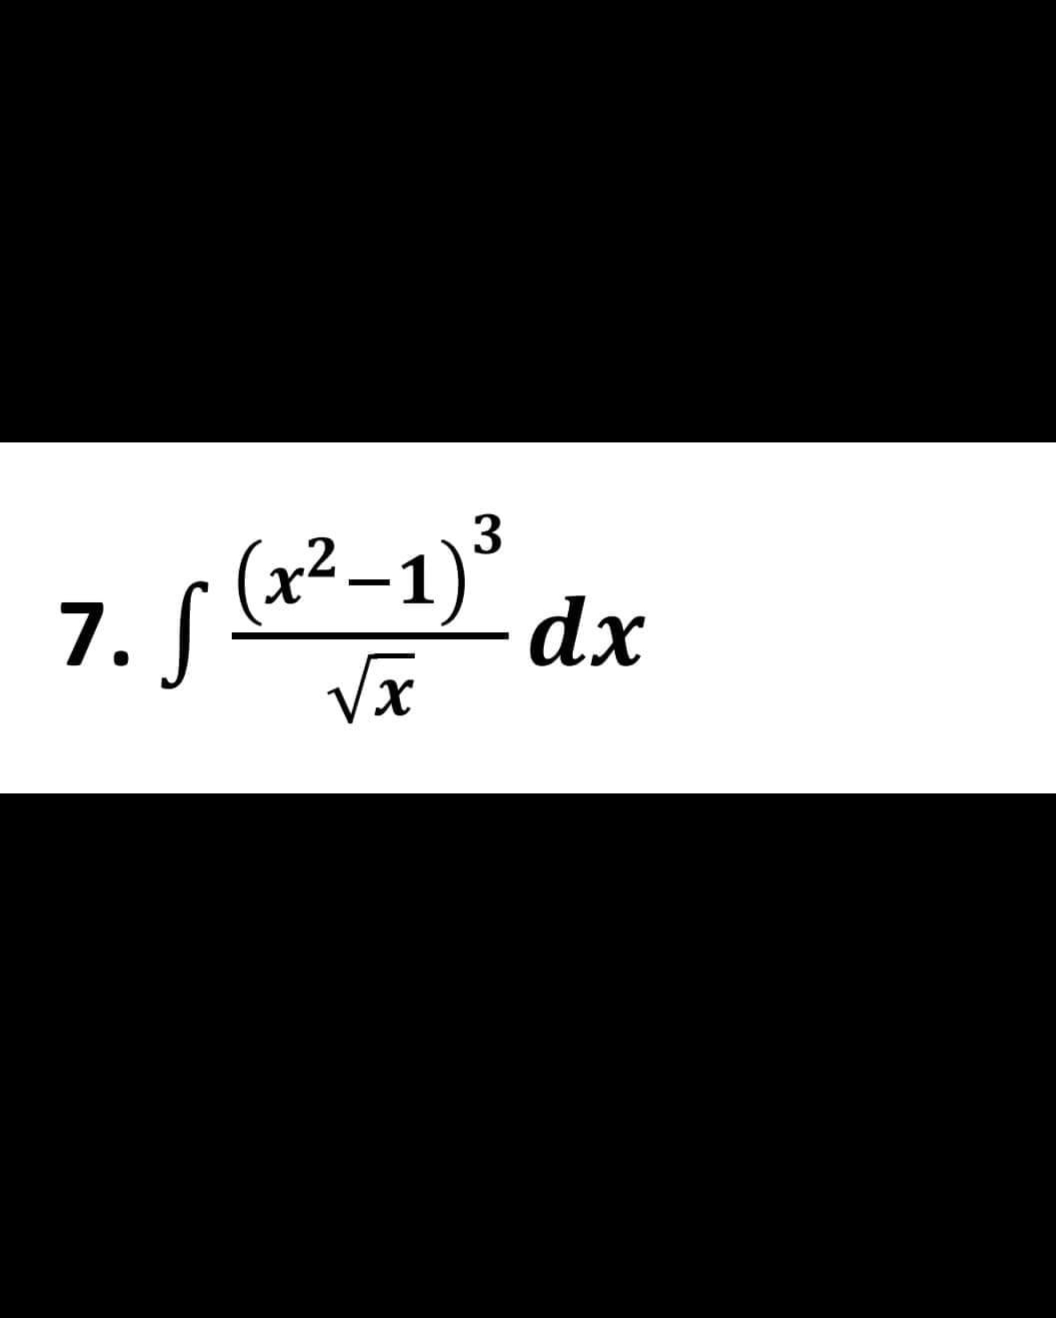 (x²-1)
7. S
√x
3
dx